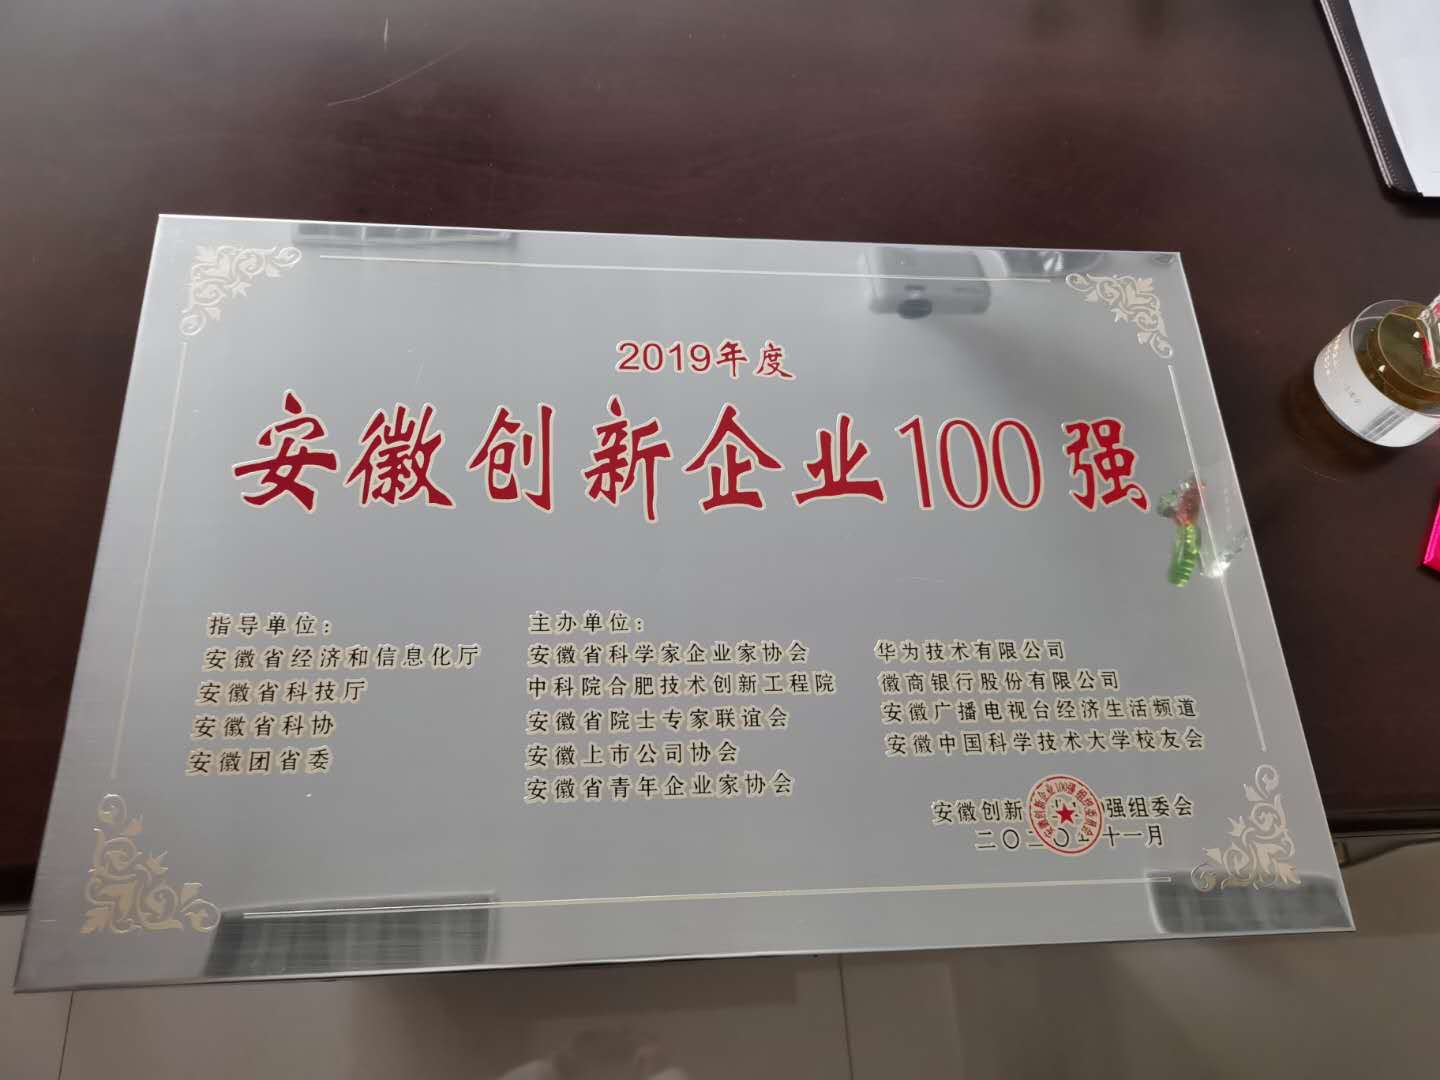 安徽创新企业100强 (